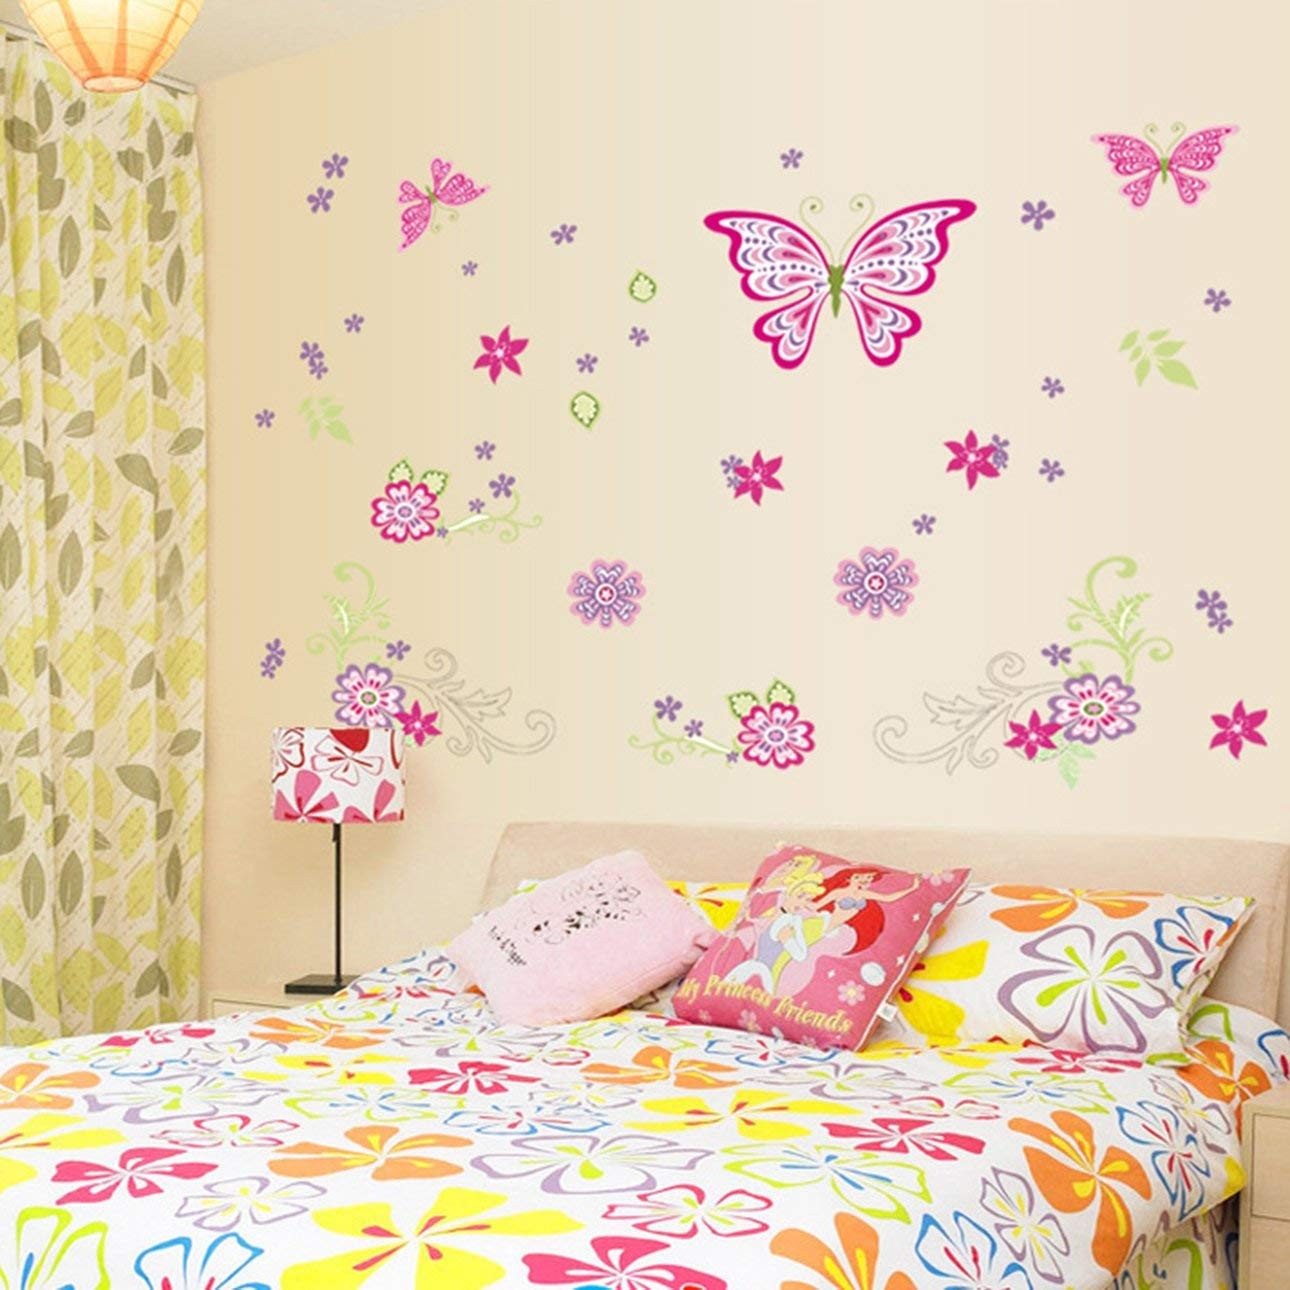 55 idées de décorations pour les chambres de vos filles 49